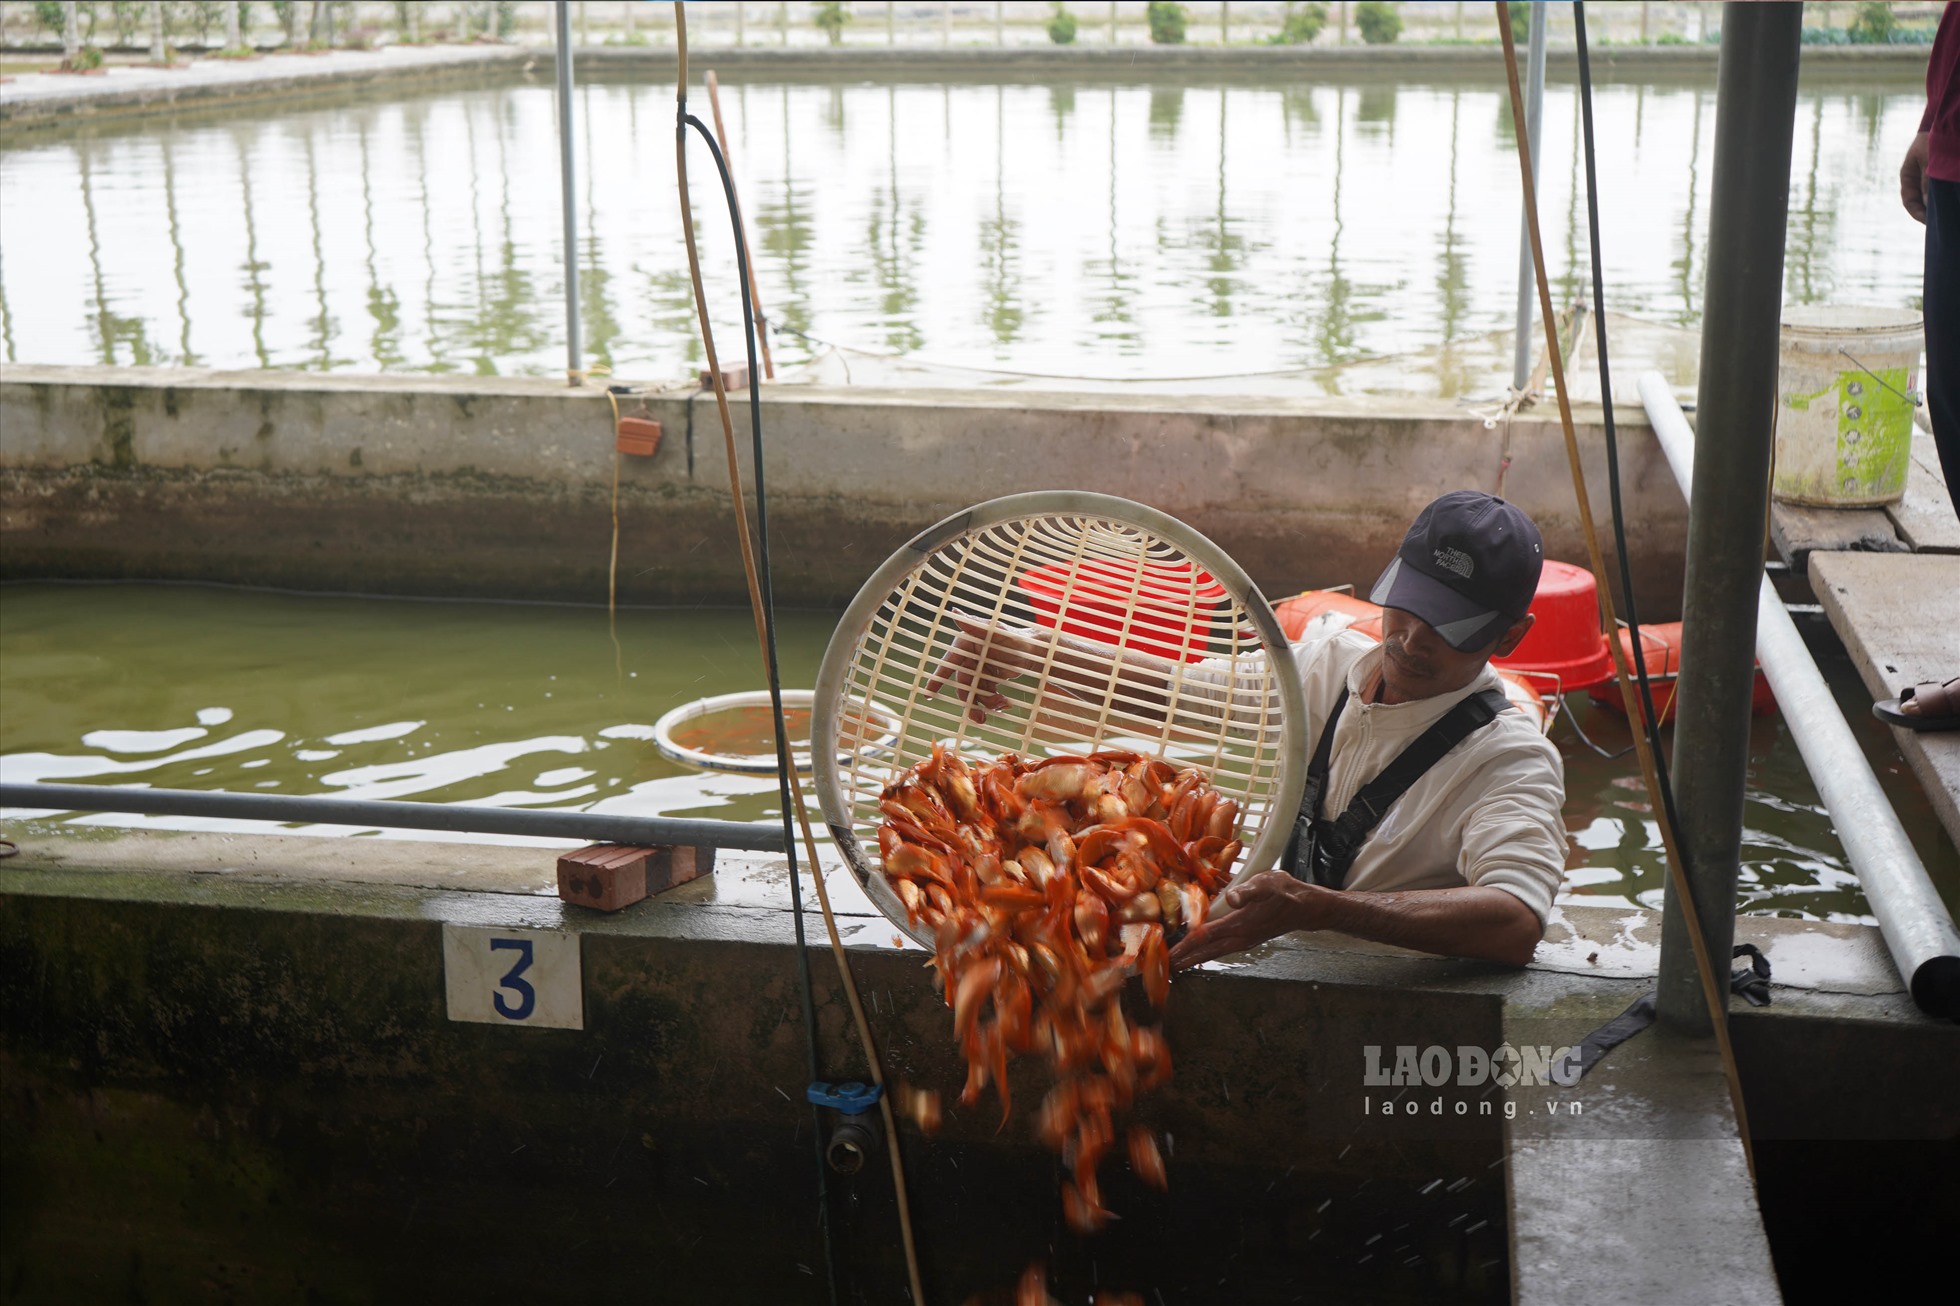 Đến ngày 12.1 (dương lịch) giá cá chép đỏ làng Hội Am dao động khoảng 60.000 - 100.000 đồng/kg (tùy loại cá to nhỏ khác nhau). Ảnh: T.Hà